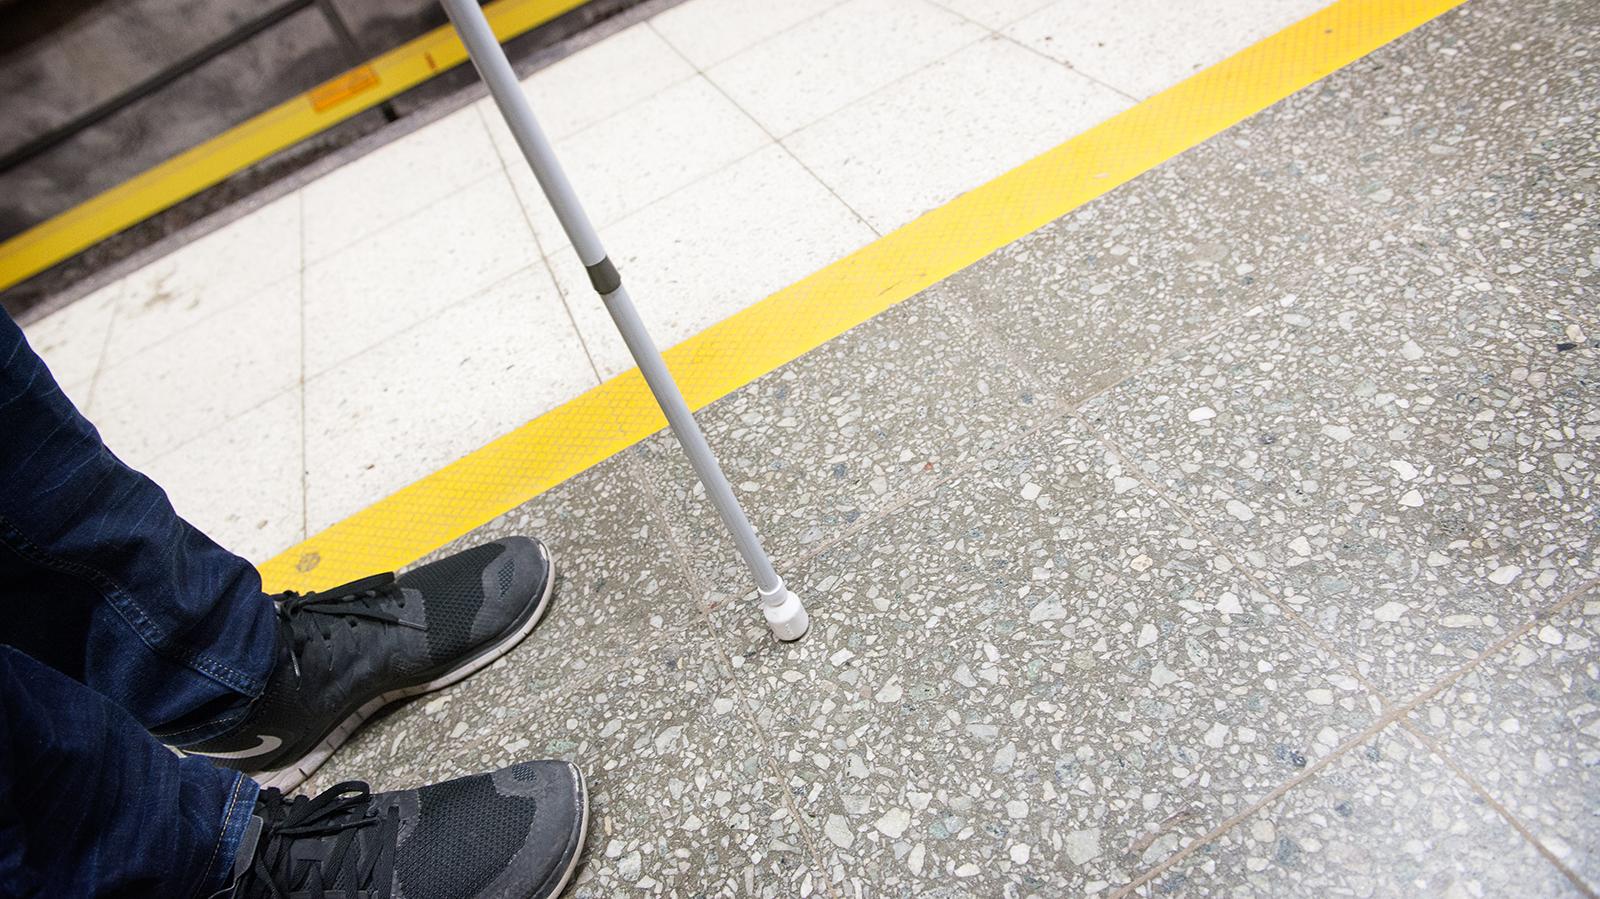 Kuvassa näkyy valkoinen keppi ja sen käyttäjän musta lenkkitossu ja farkun lahje. Maassa näkyy metroaseman lattian keltaista kontrastiraitaa.